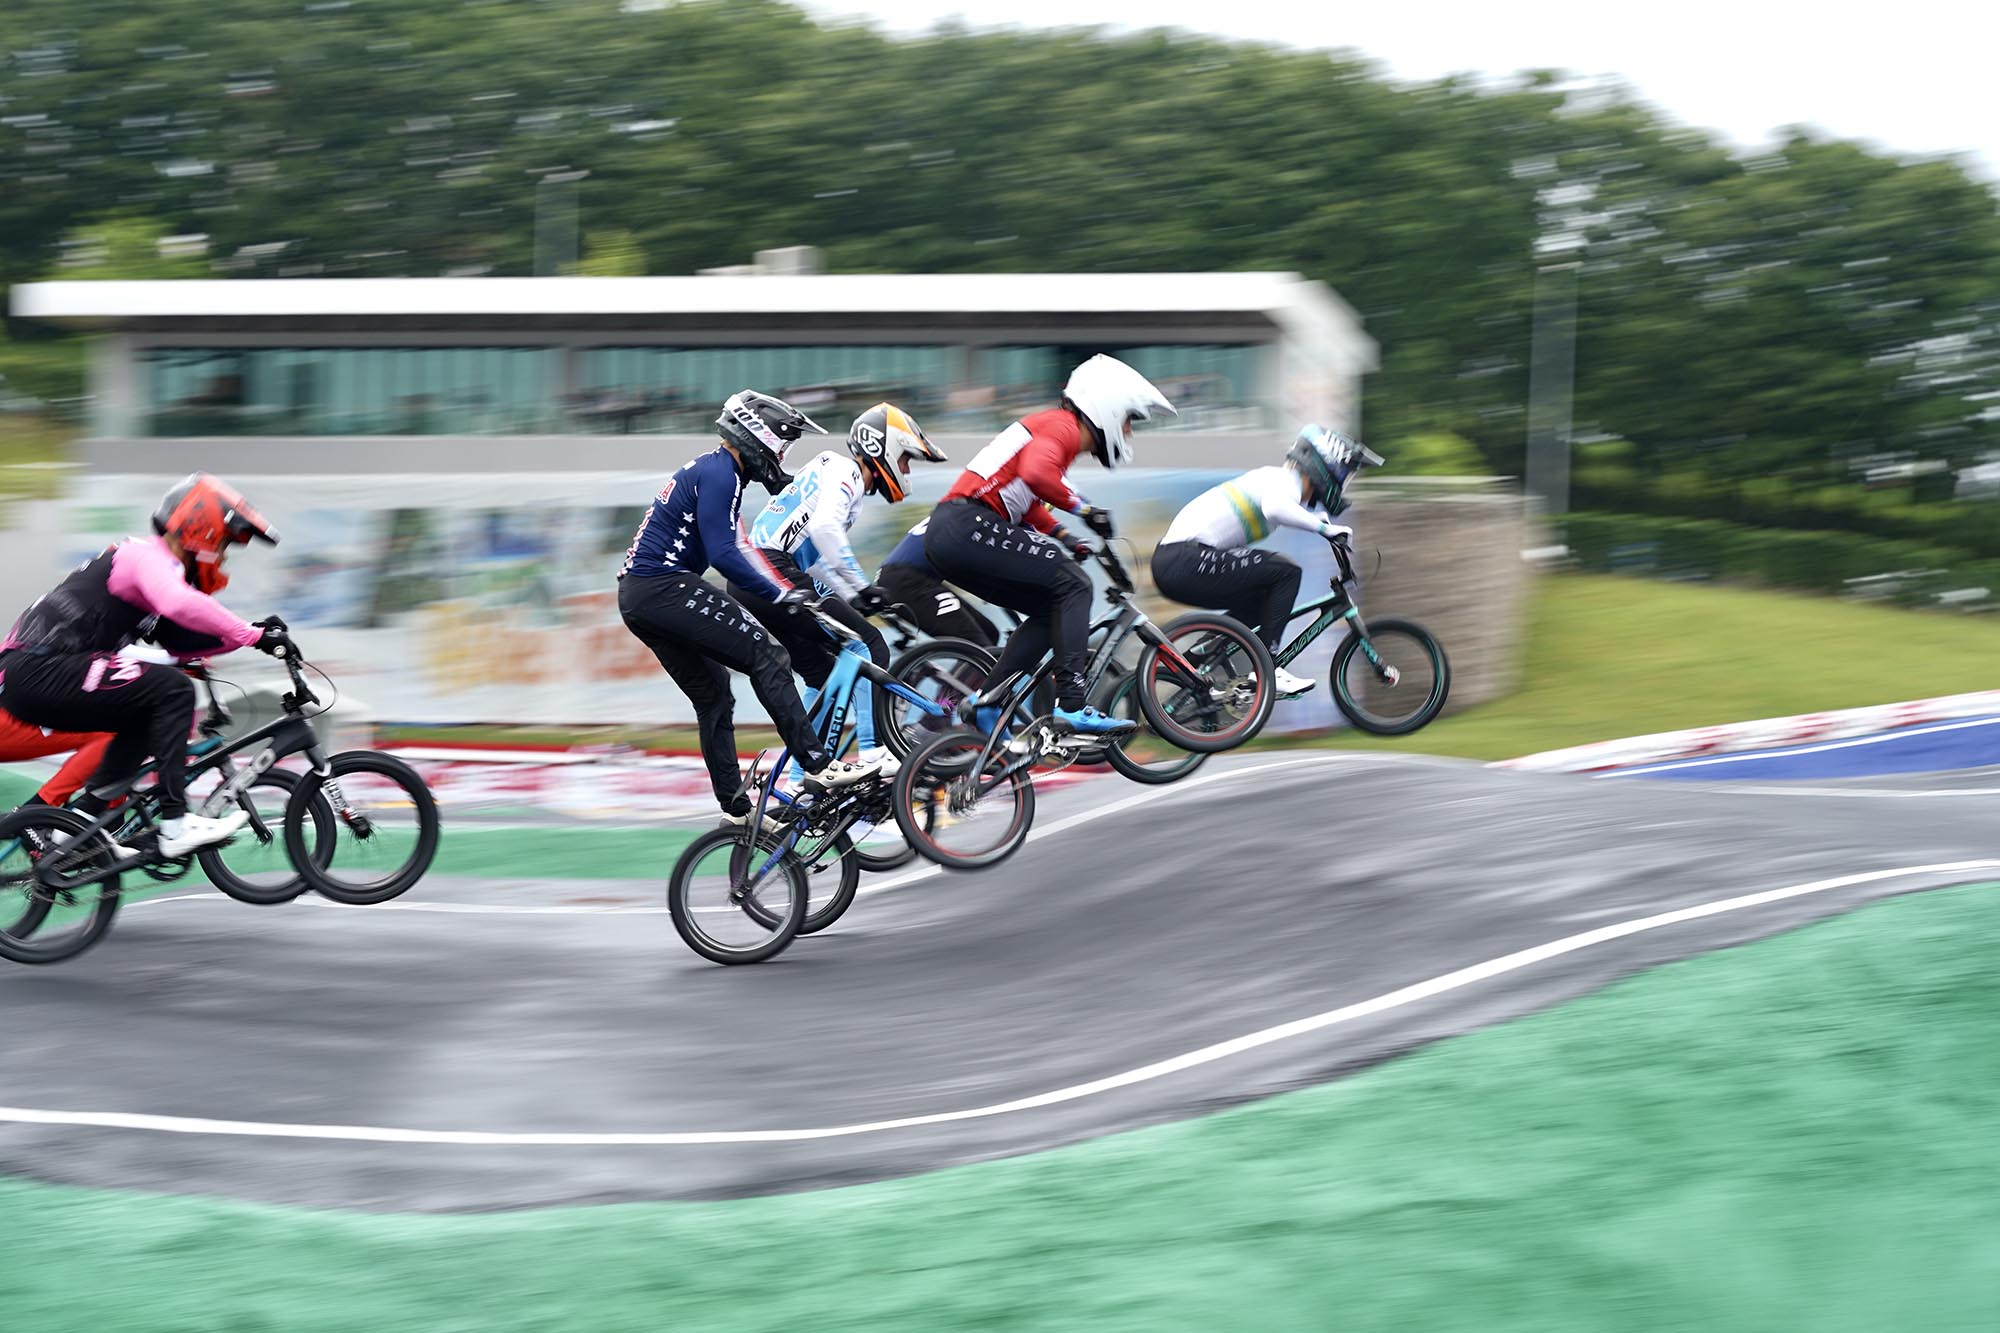 Sakarya’da BMX World Cup heyecanı: Dünyanın en iyileri vadide pedal çeviriyor